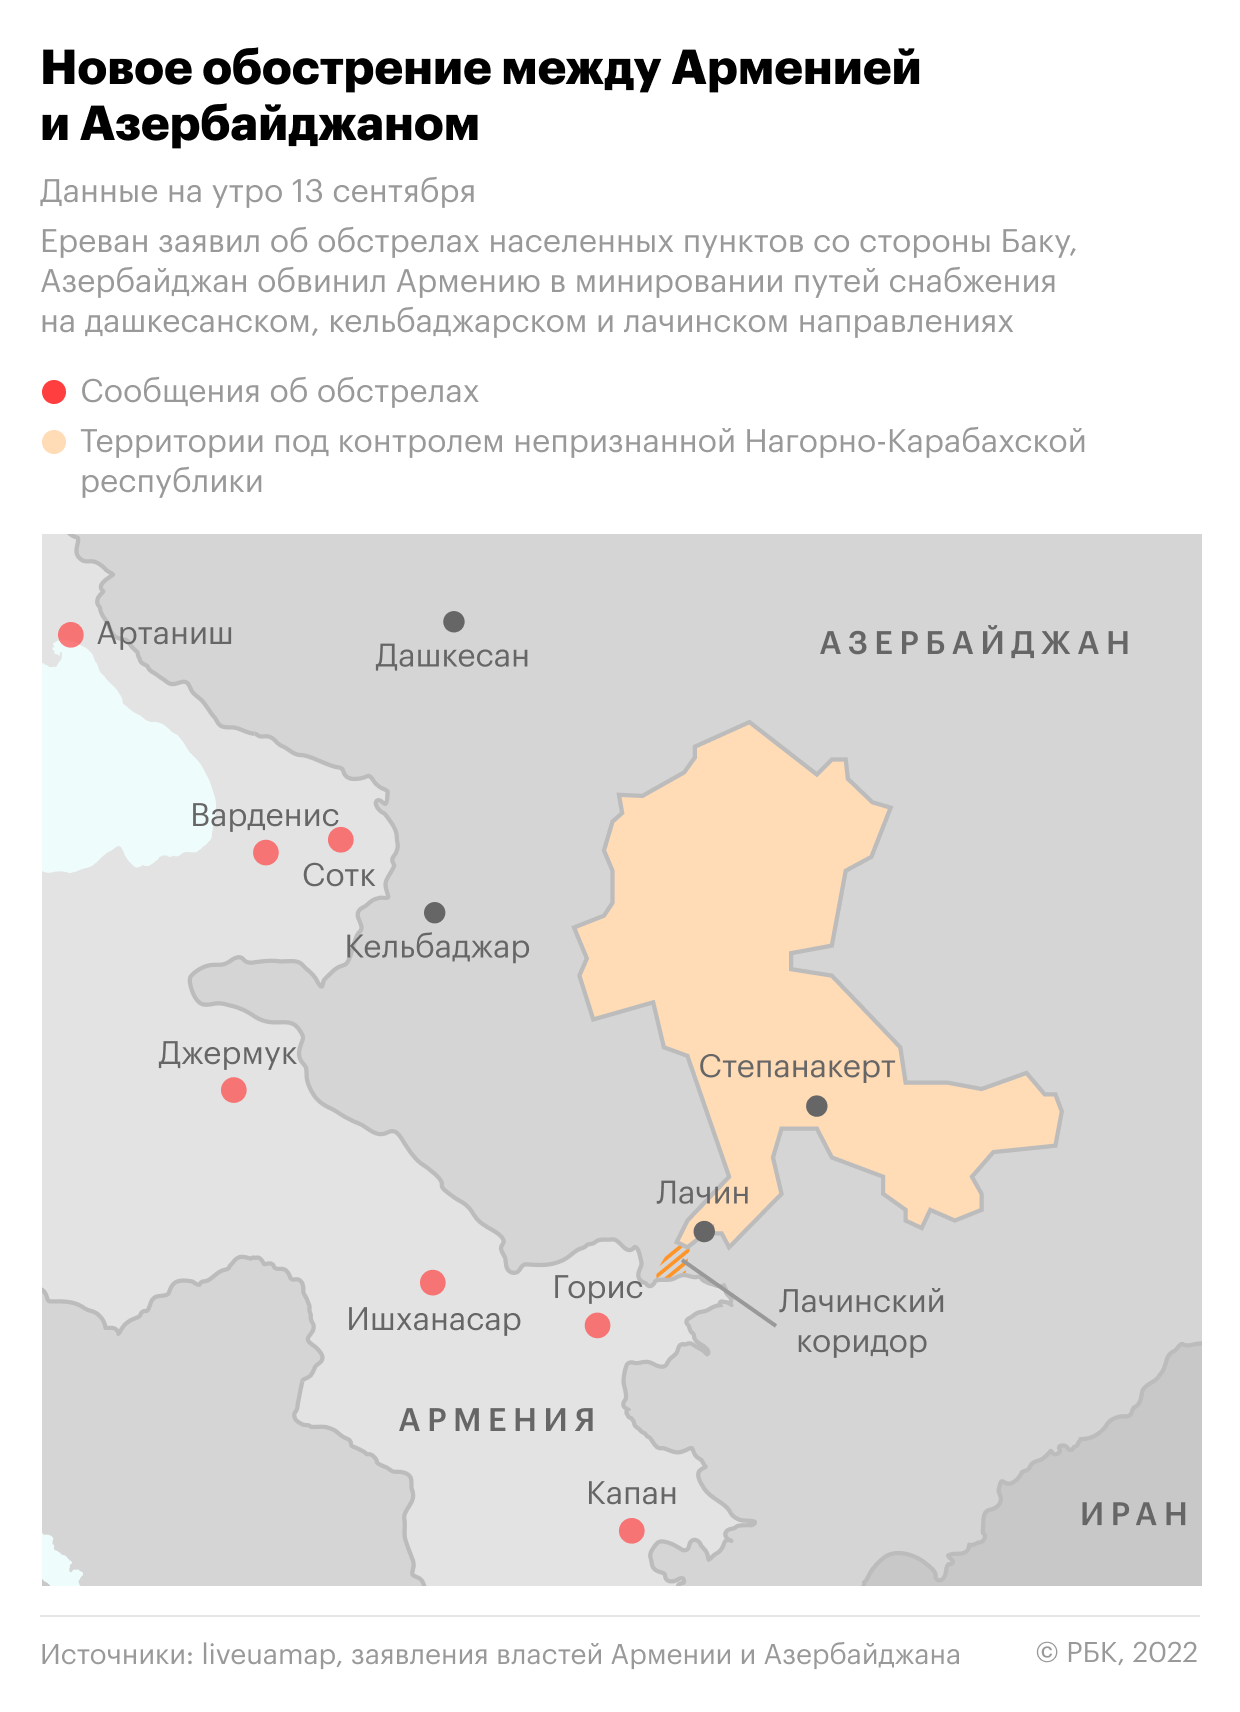 Новое обострение между Арменией и Азербайджаном. Главное"/>













